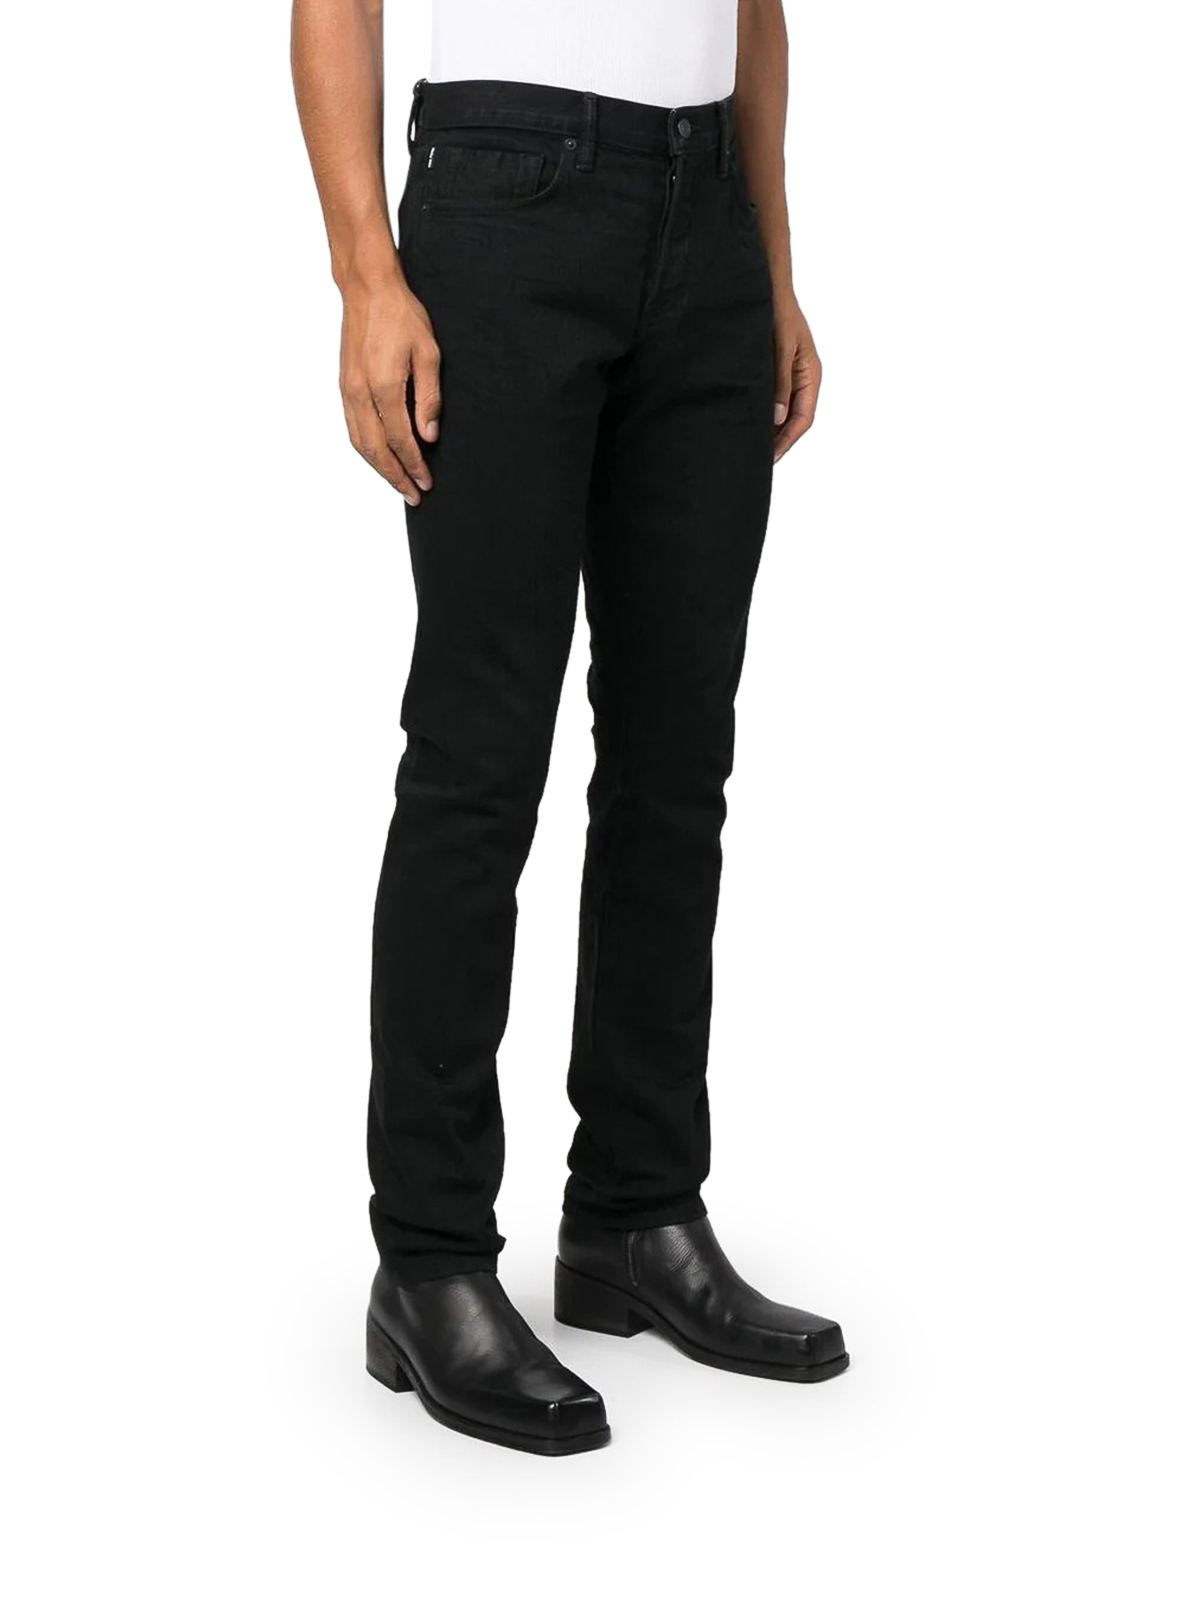 Skinny jeans Tom Ford - Black denim jeans - BAJ50TFD001K09 